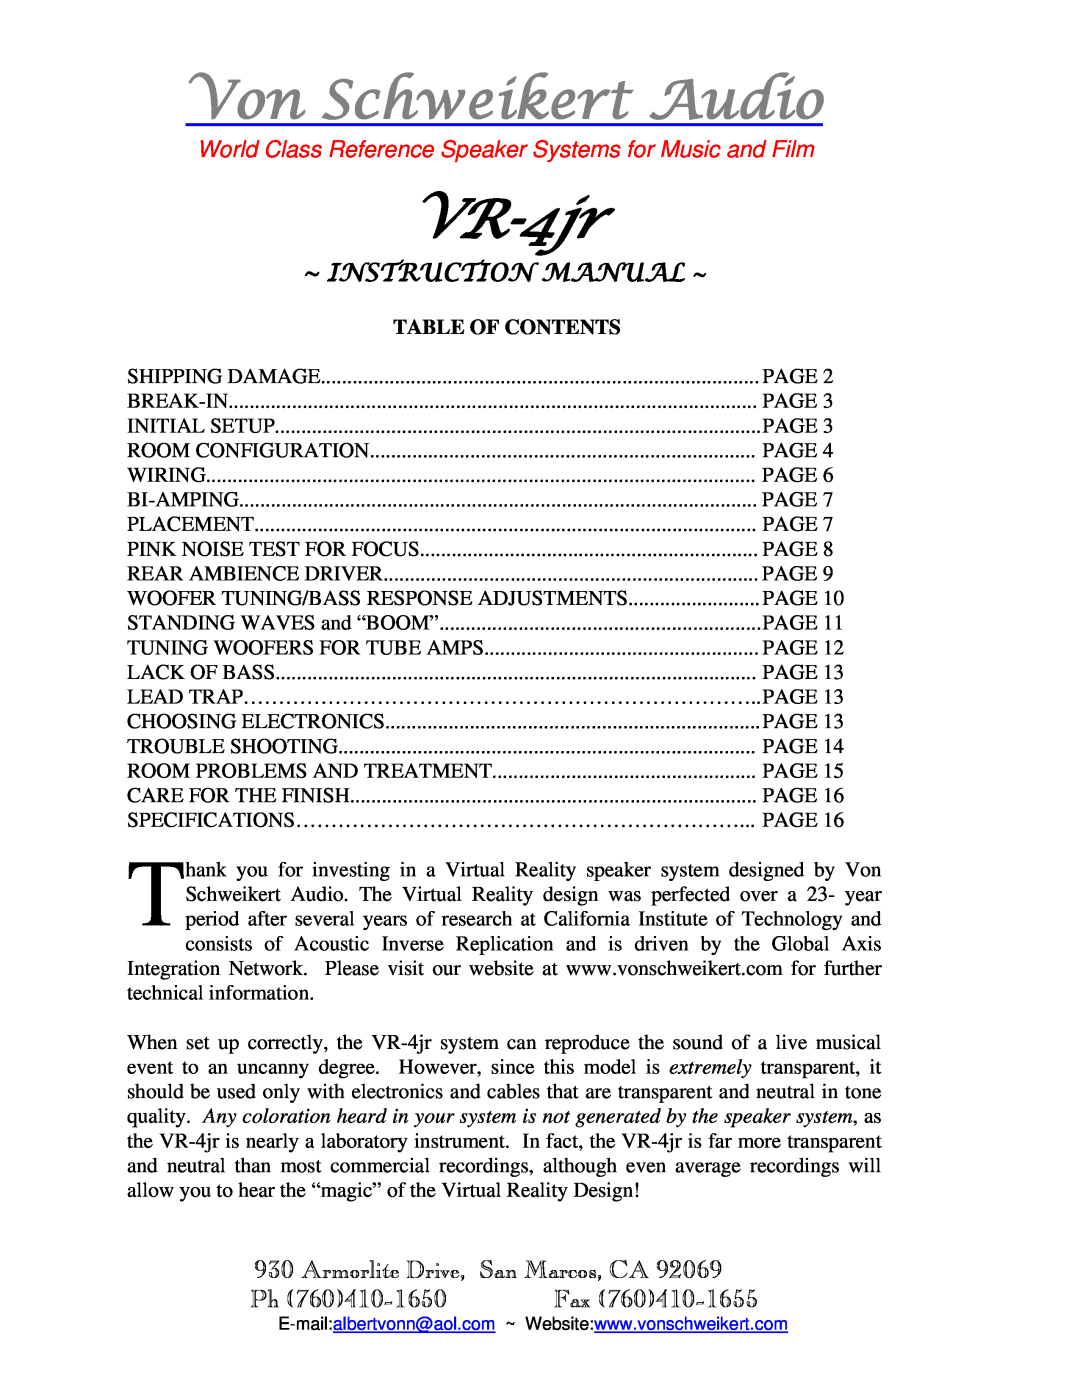 Von Schweikert Audio VR-4jr instruction manual Von Schweikert Audio, Armorlite Drive, San Marcos, CA, Table Of Contents 